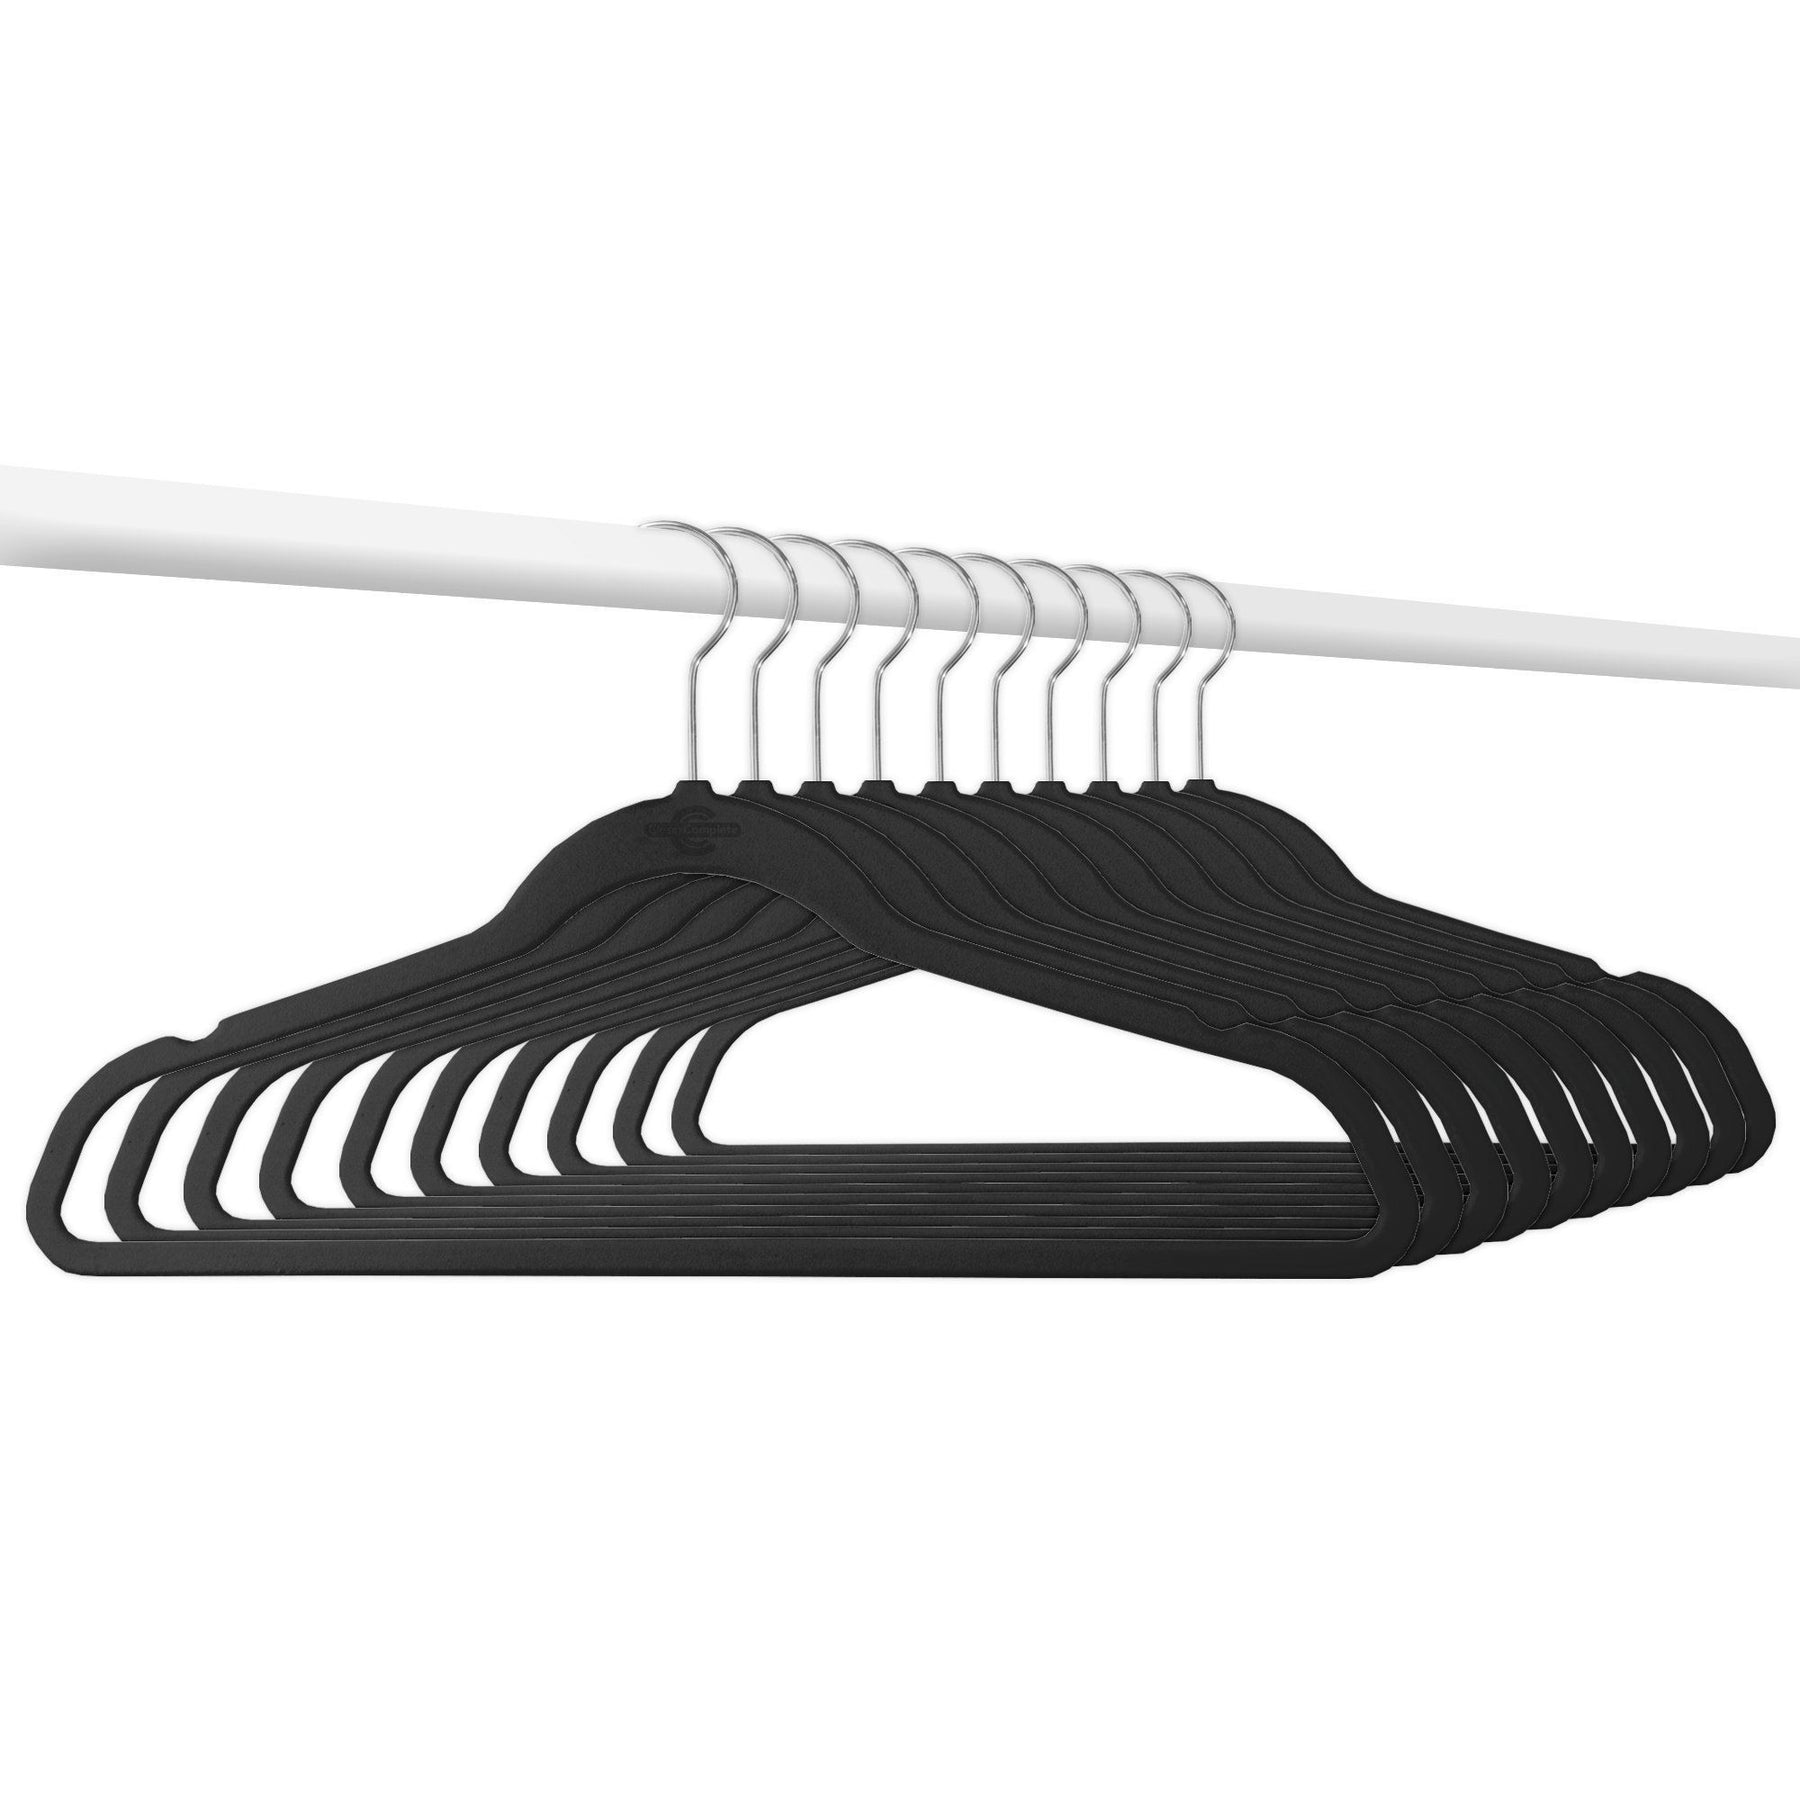 International Hanger Kids Black Velvet Suit Hanger (11 5/8 X 3/16) Box of  100